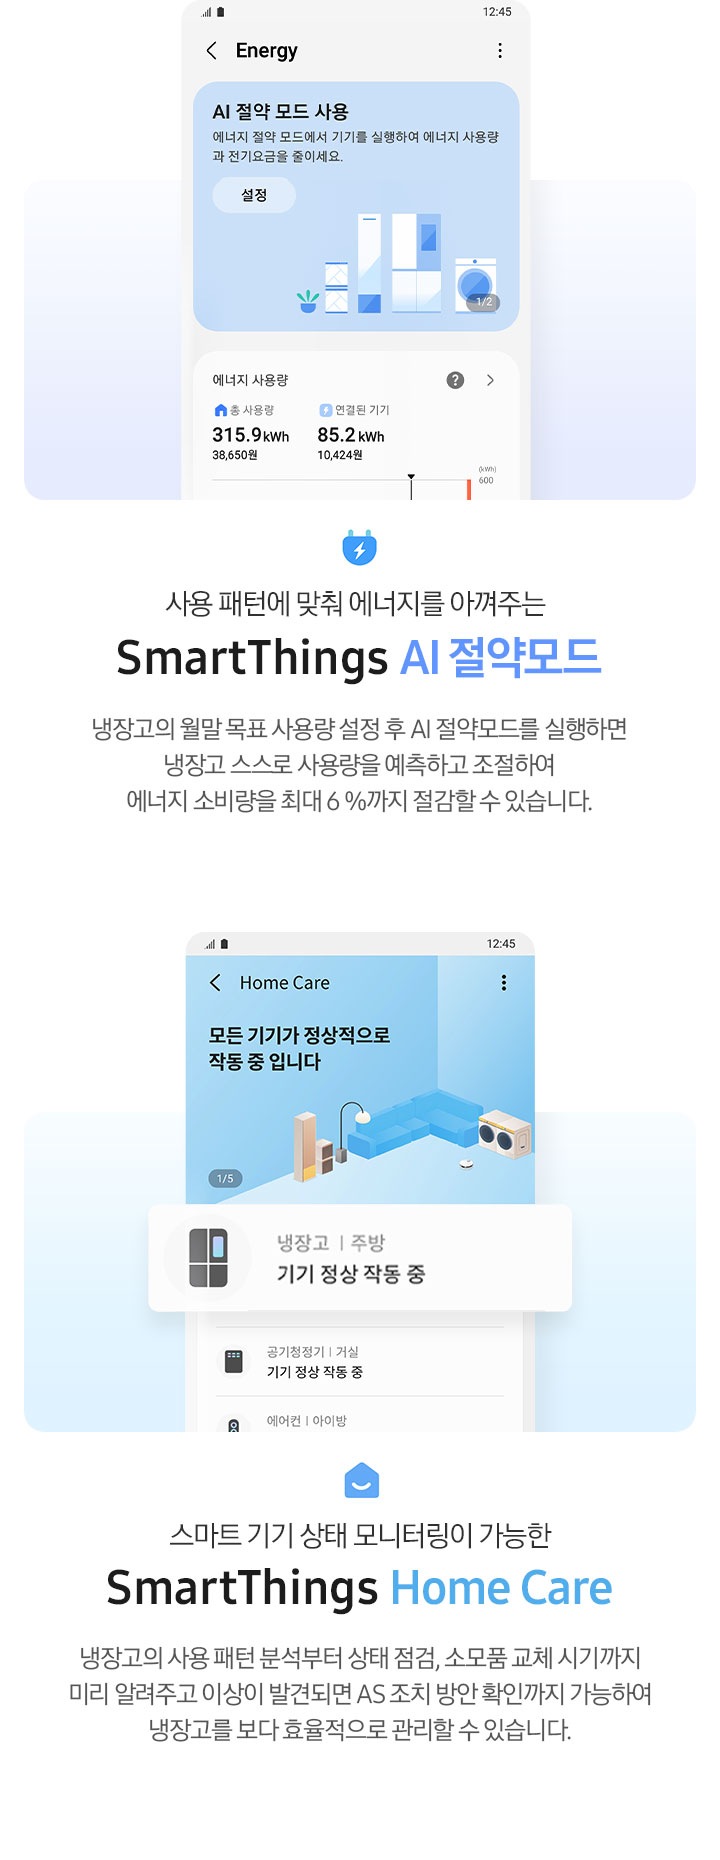 사용 패턴에 맞춰 에너지를 아껴주는 SmartThings AI절약모드, 스마트 기기 상태 모니터링이 가능한 SmartThings Home Care 내용과 앱 이미지가 나와있습니다.